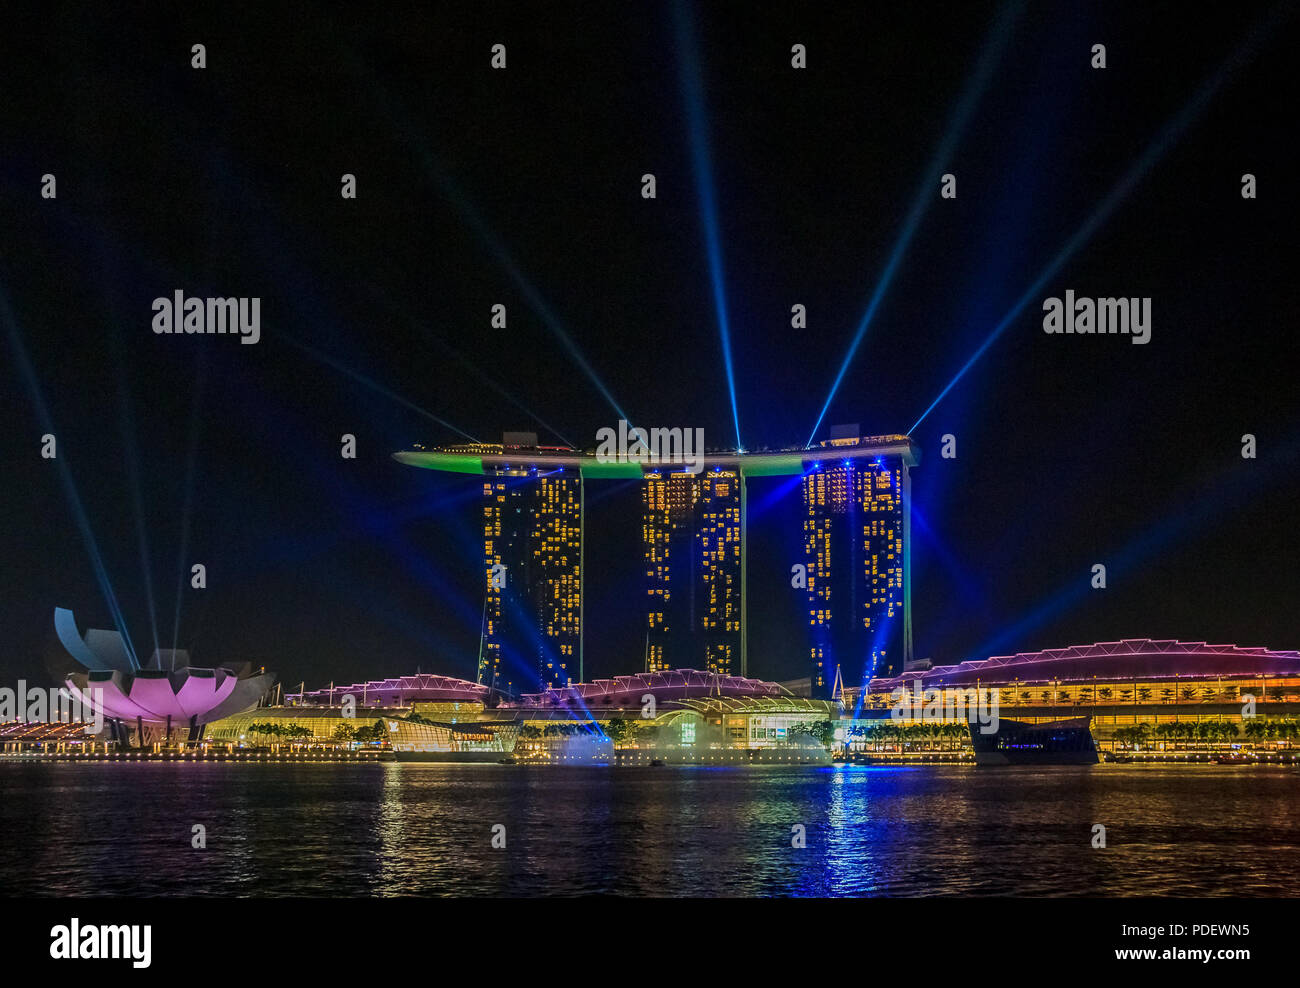 Singapour - le 12 août 2013 : Avis d'émerveillement plein, le plus grand de l'Asie du sud-est de la lumière et de l'eau de Singapour à Marina Bay Sands Hotel and Casino. Banque D'Images